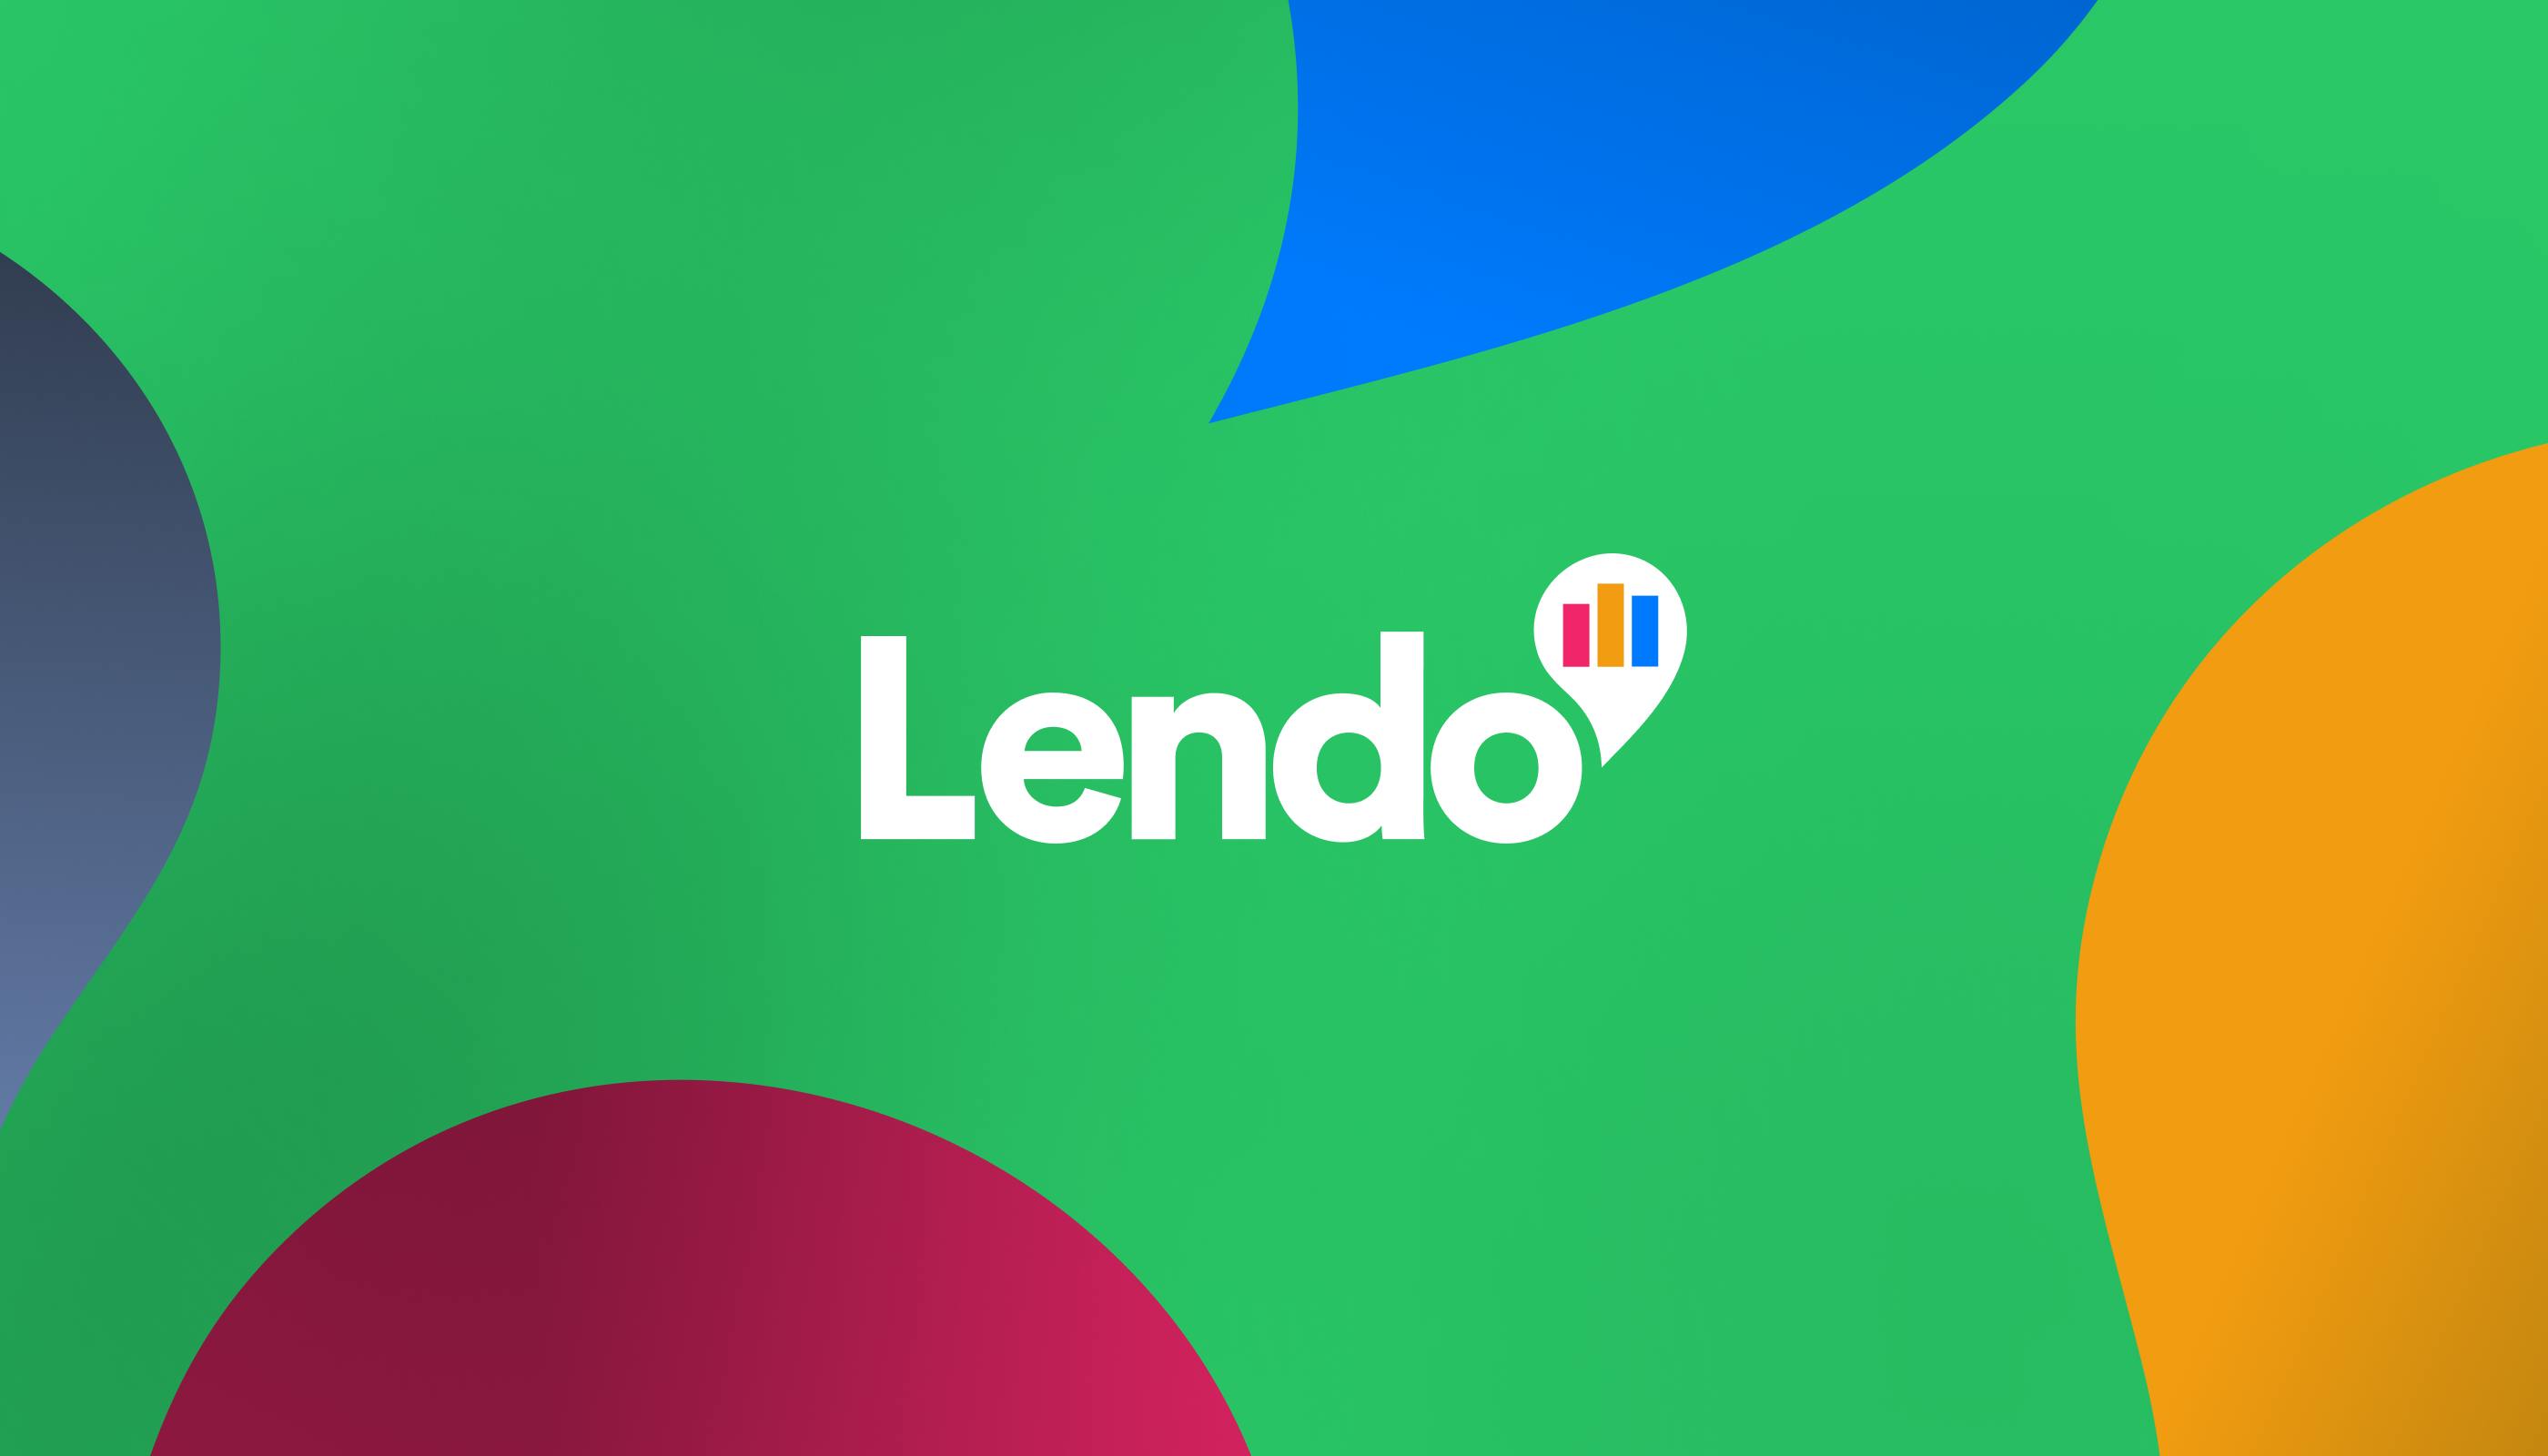 Lendos logotyp på en grön bakgrund